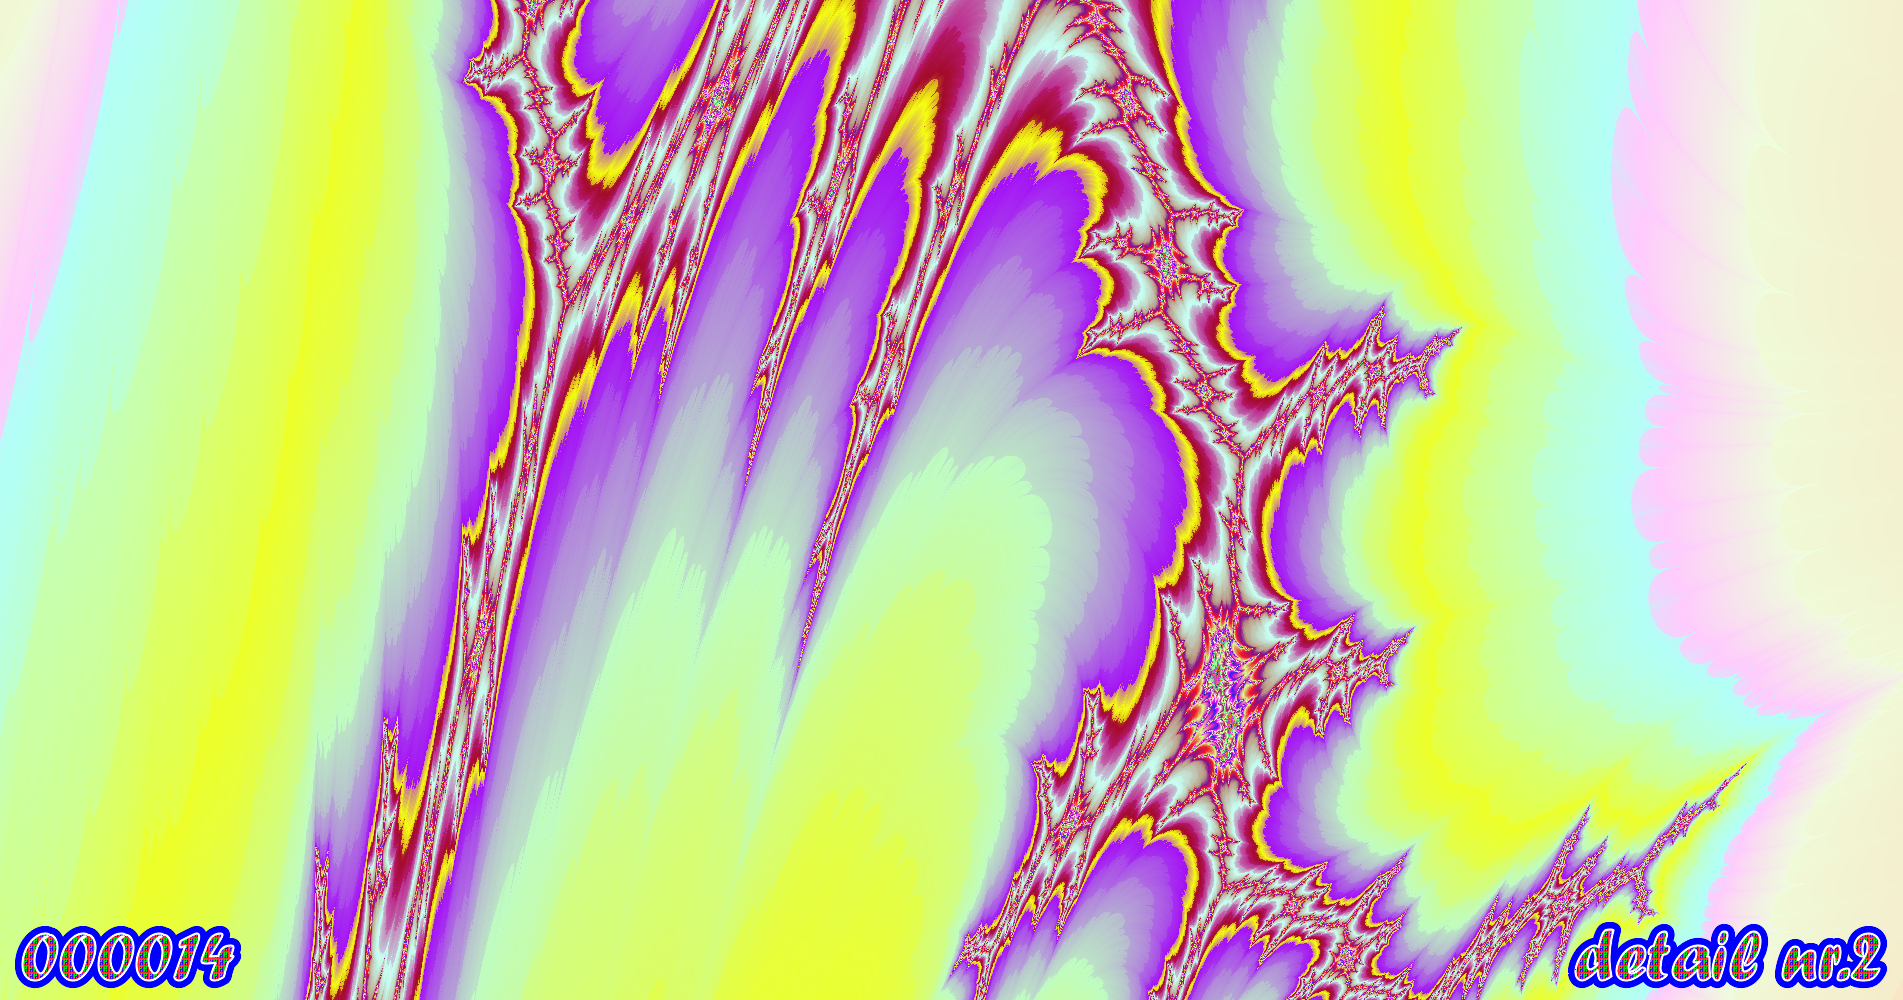 fractal kunst nr. 000014 ,detail nr. 2